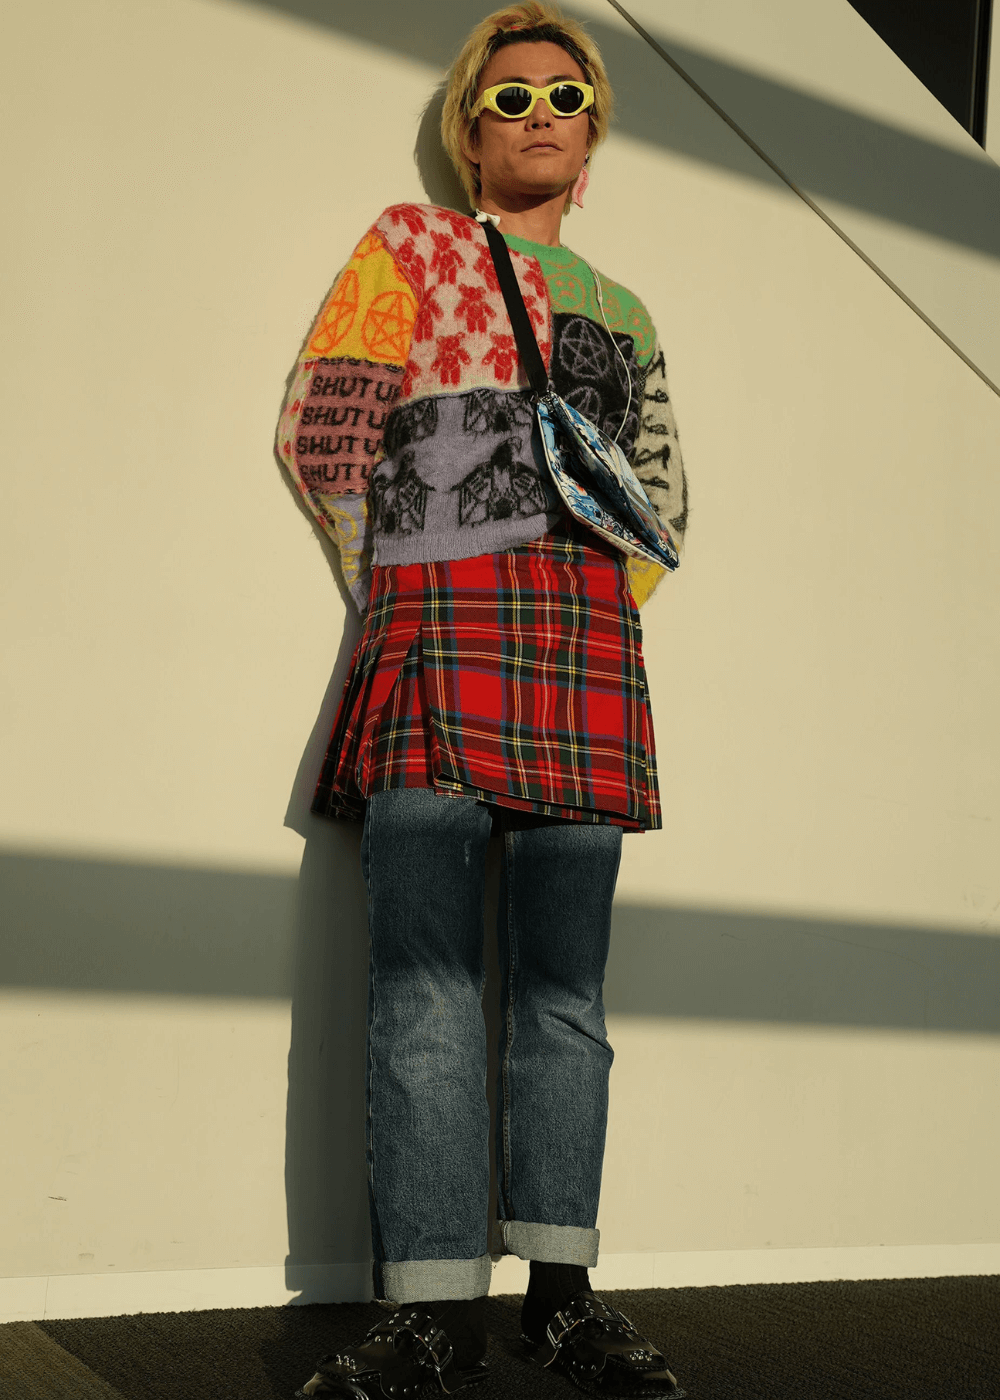 Street Style asiático - calça jeans, minissaia xadrez, tricot colorido e óculos amarelo - Street Style asiático - inverno - homem asiático loiro usando óculos de sol parado em pé encostado em uma parede - https://stealthelook.com.br